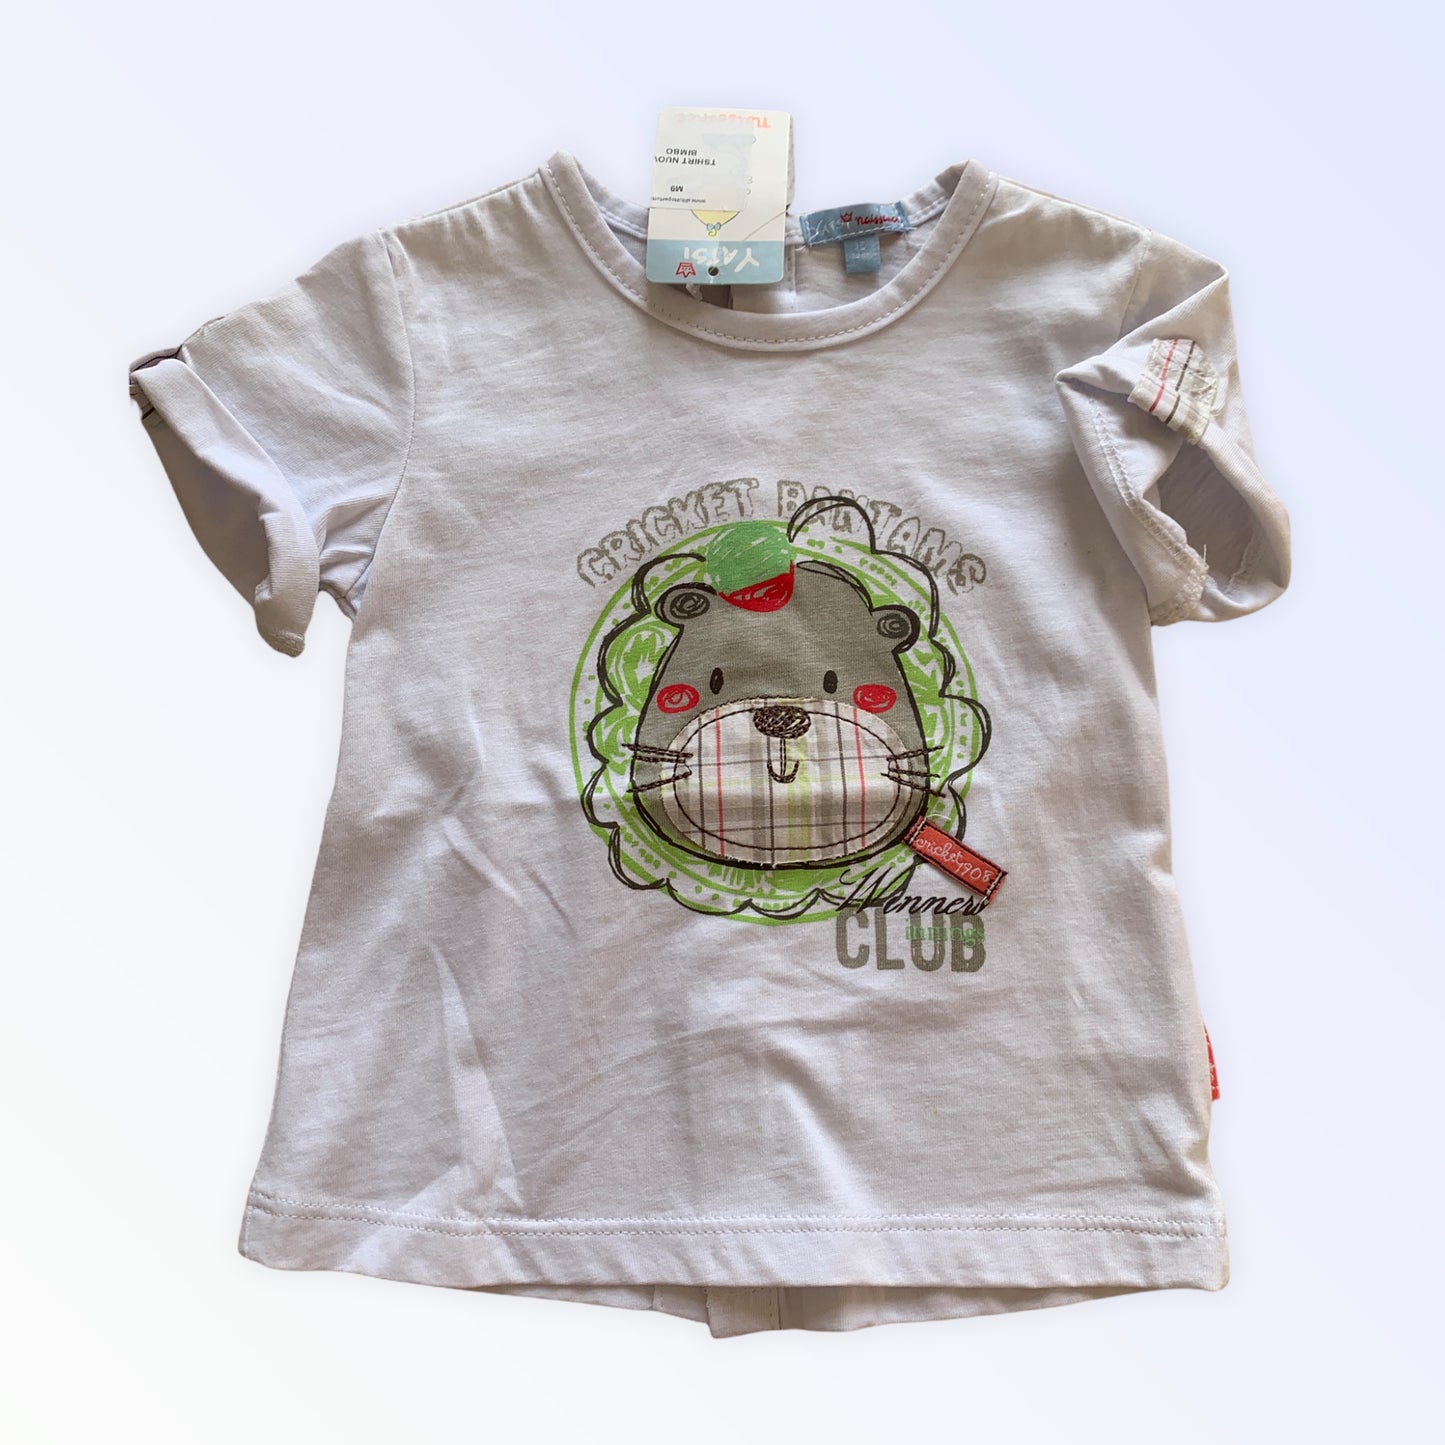 Yatsi Naissance 12 Monate neues Baby-T-Shirt